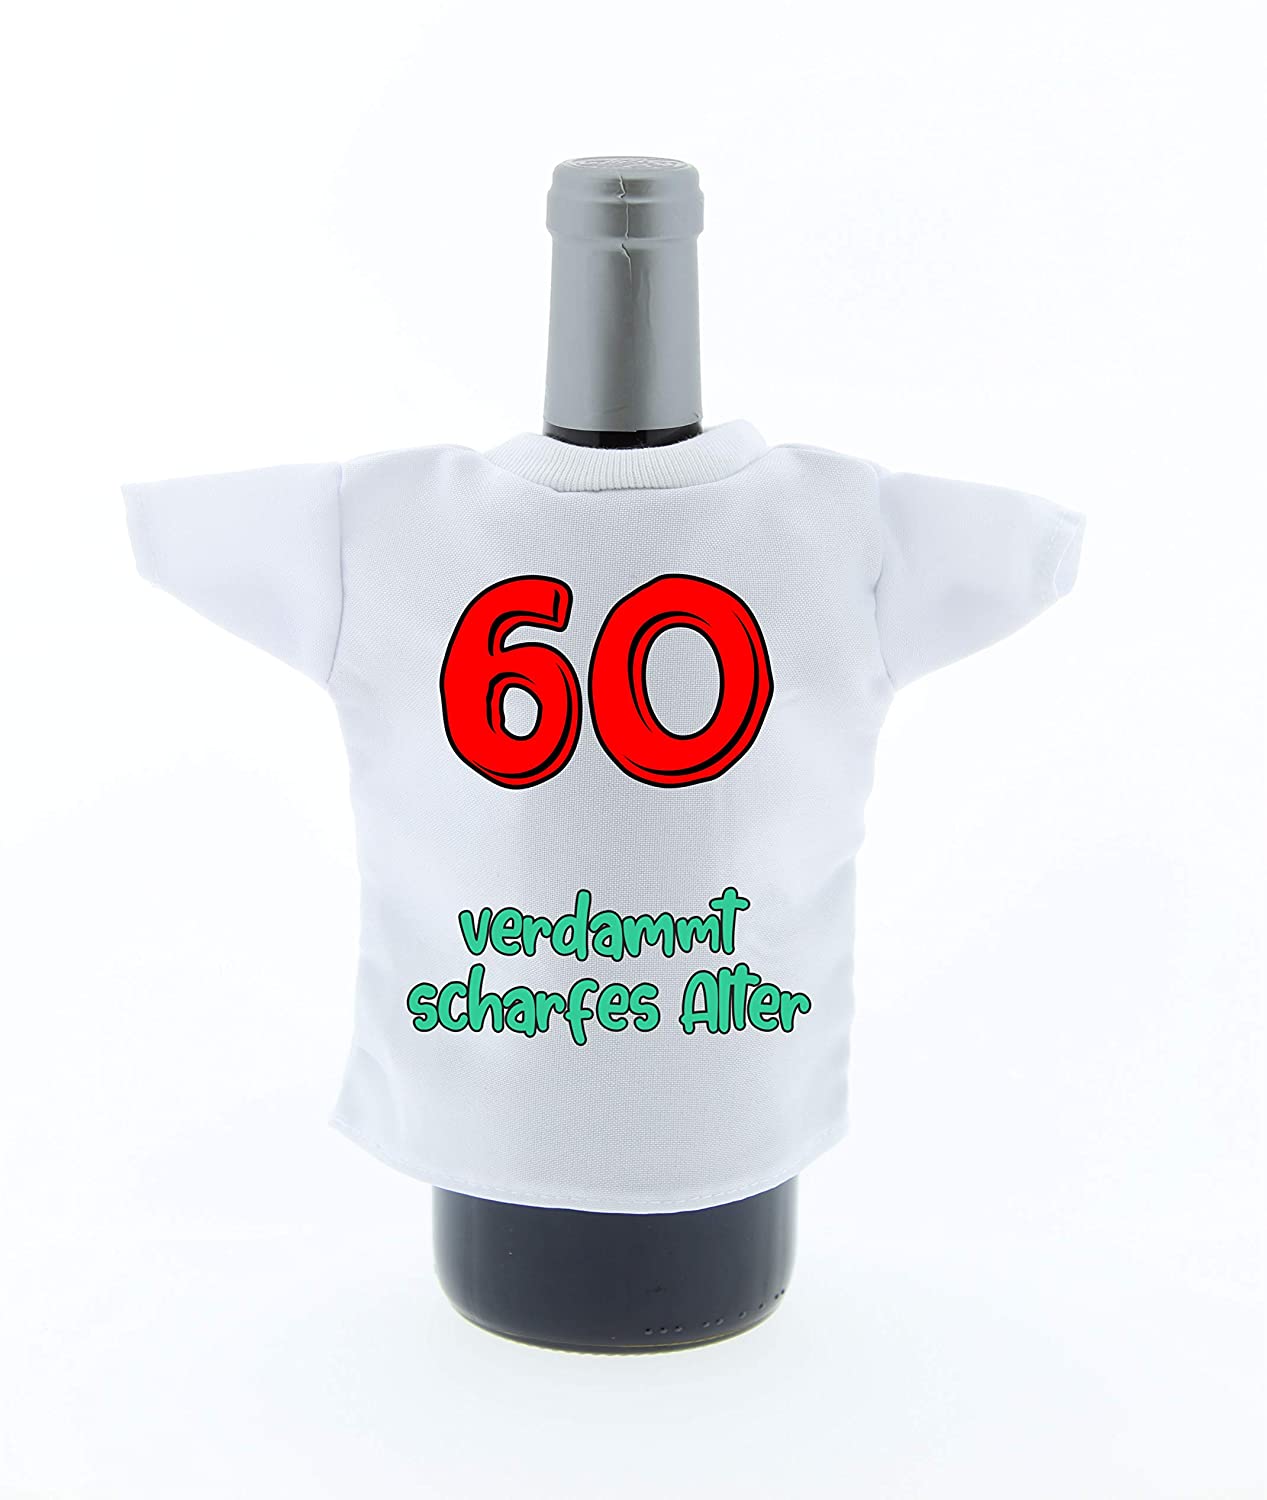 Flaschen Shirt Deko Mini Tshirt zum 60Geburtstag mit Aufdruck 60 verdammt scharfes Alter